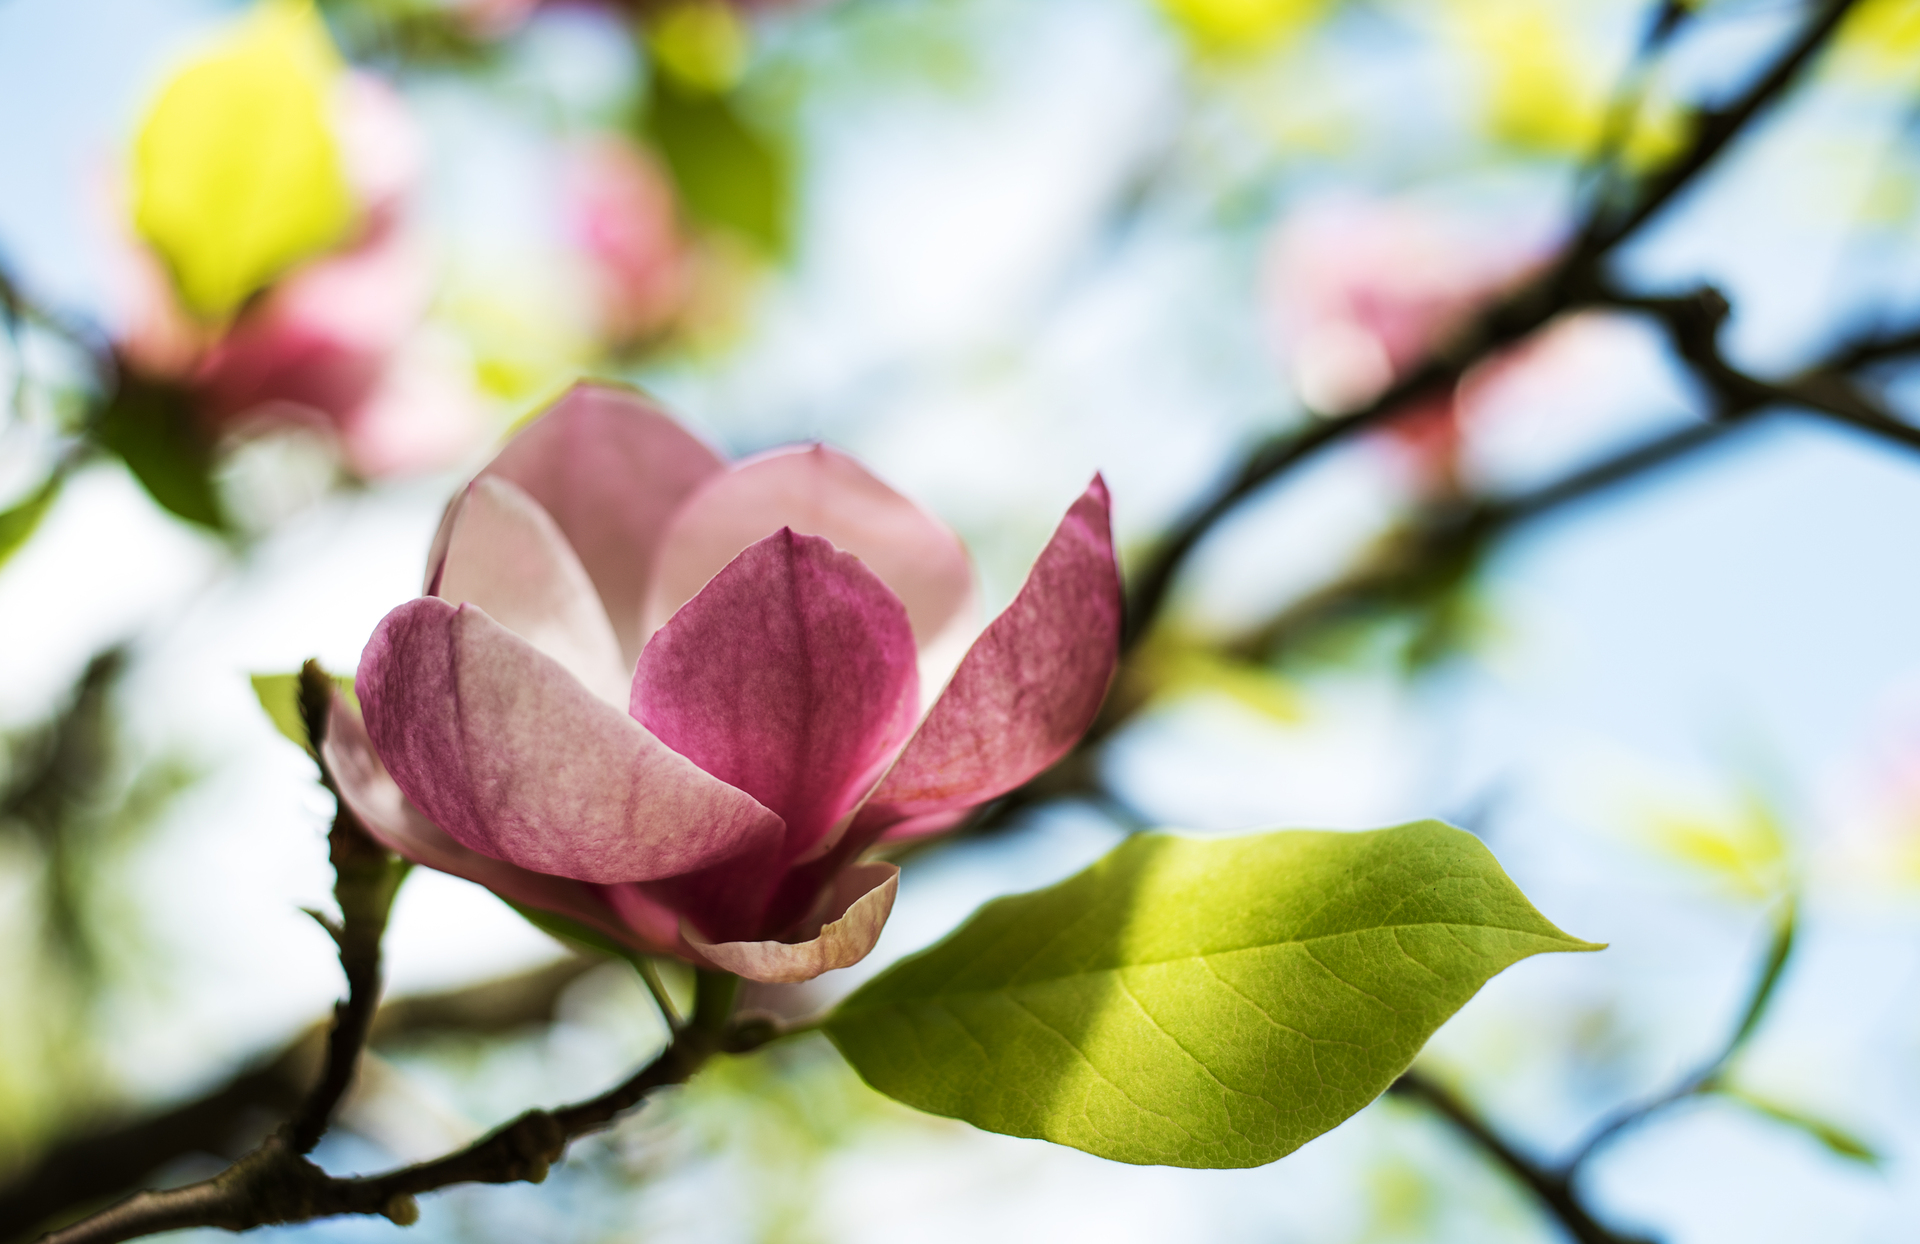 Na obrazku widoczna jest piękna bordowa magnolia, jako ciekawy kwiat do ogrodu. Roślina ta zachwyca swoim intensywnym, bordowym kolorem oraz dużymi, okazałymi płatkami, które tworzą piękne, harmonijne kształty. W tle obrazka widać zieloną roślinność i drzewa, co podkreśla naturalny charakter ogrodu. Kwiat jest ustawiony na tle zielonego tła, co sprawia, że jego kolor wydaje się jeszcze bardziej intensywny. Obrazek ten może pomóc w zrozumieniu, jak piękne i ciekawe kwiaty, takie jak bordowa magnolia, mogą być w ogrodzie, i jaką przyjemność daje obcowanie z taką naturą.